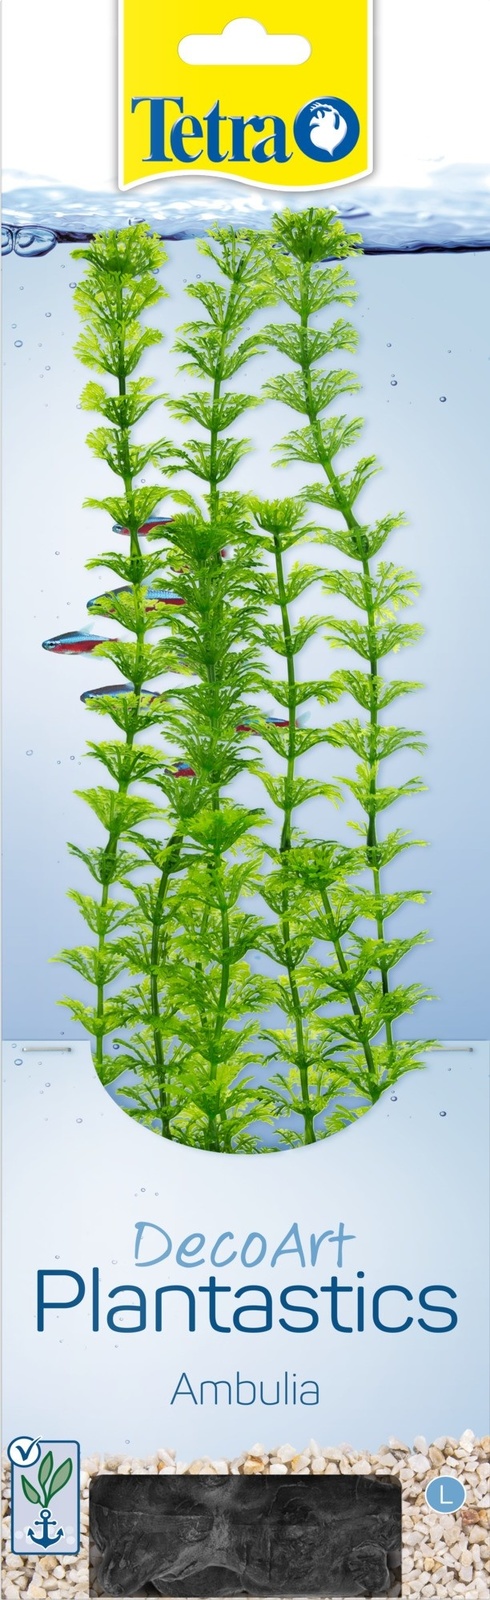 цена Tetra (оборудование) Tetra (оборудование) растение DecoArt Plantastics Ambulia 30 см (115 г)